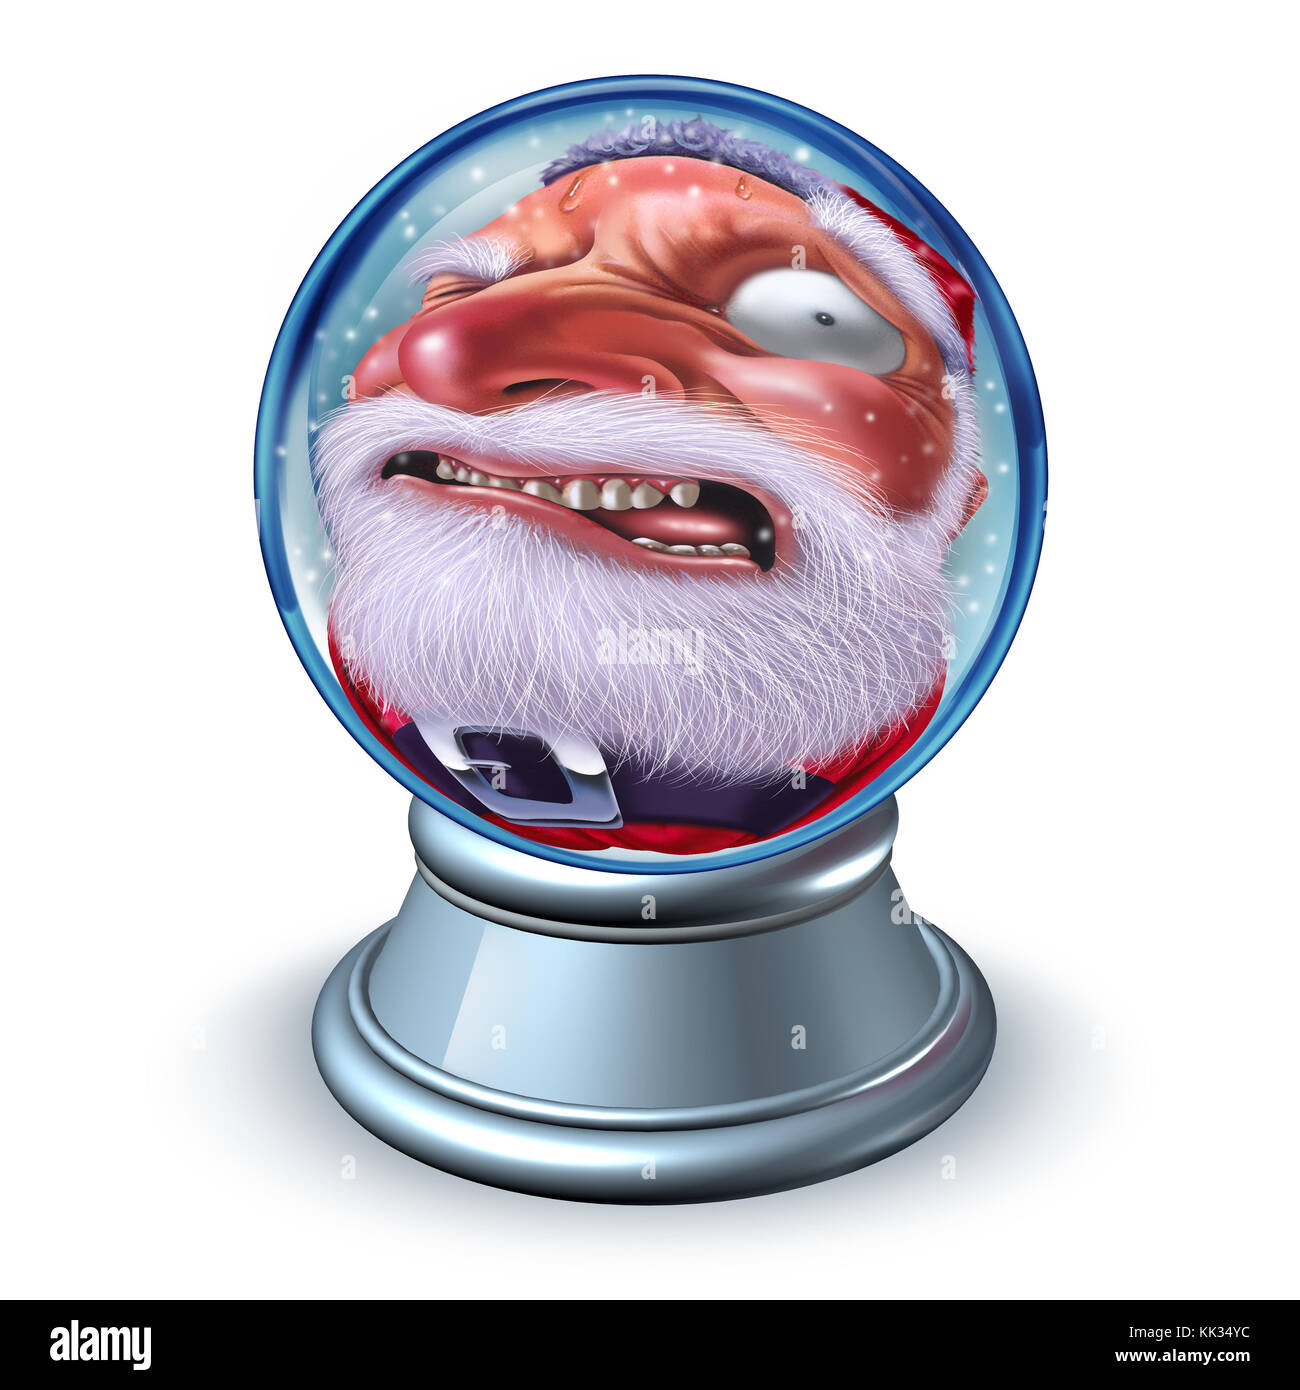 Drôle santa ou santaclaus boule de neige comme une perspective forcée Jolly vieil homme comme une idée humoristique de vacances d'hiver de boule de neige avec des éléments d'illustration 3D. Banque D'Images